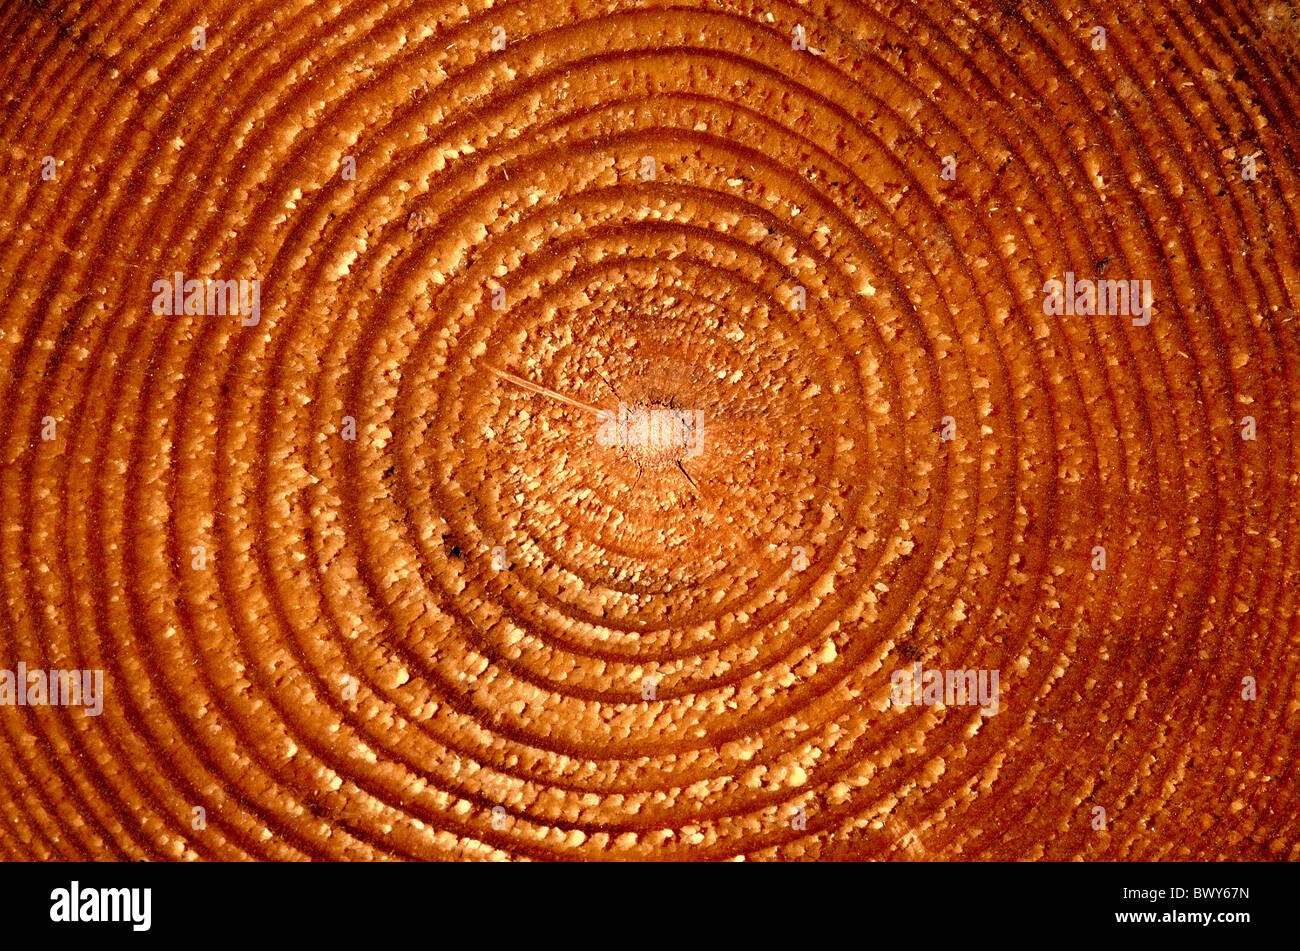 Legno sezione trasversale gli anelli annuali tronco di abete rosso albero secolare di persona intorno al cerchio struttura ad anello in background Foto Stock